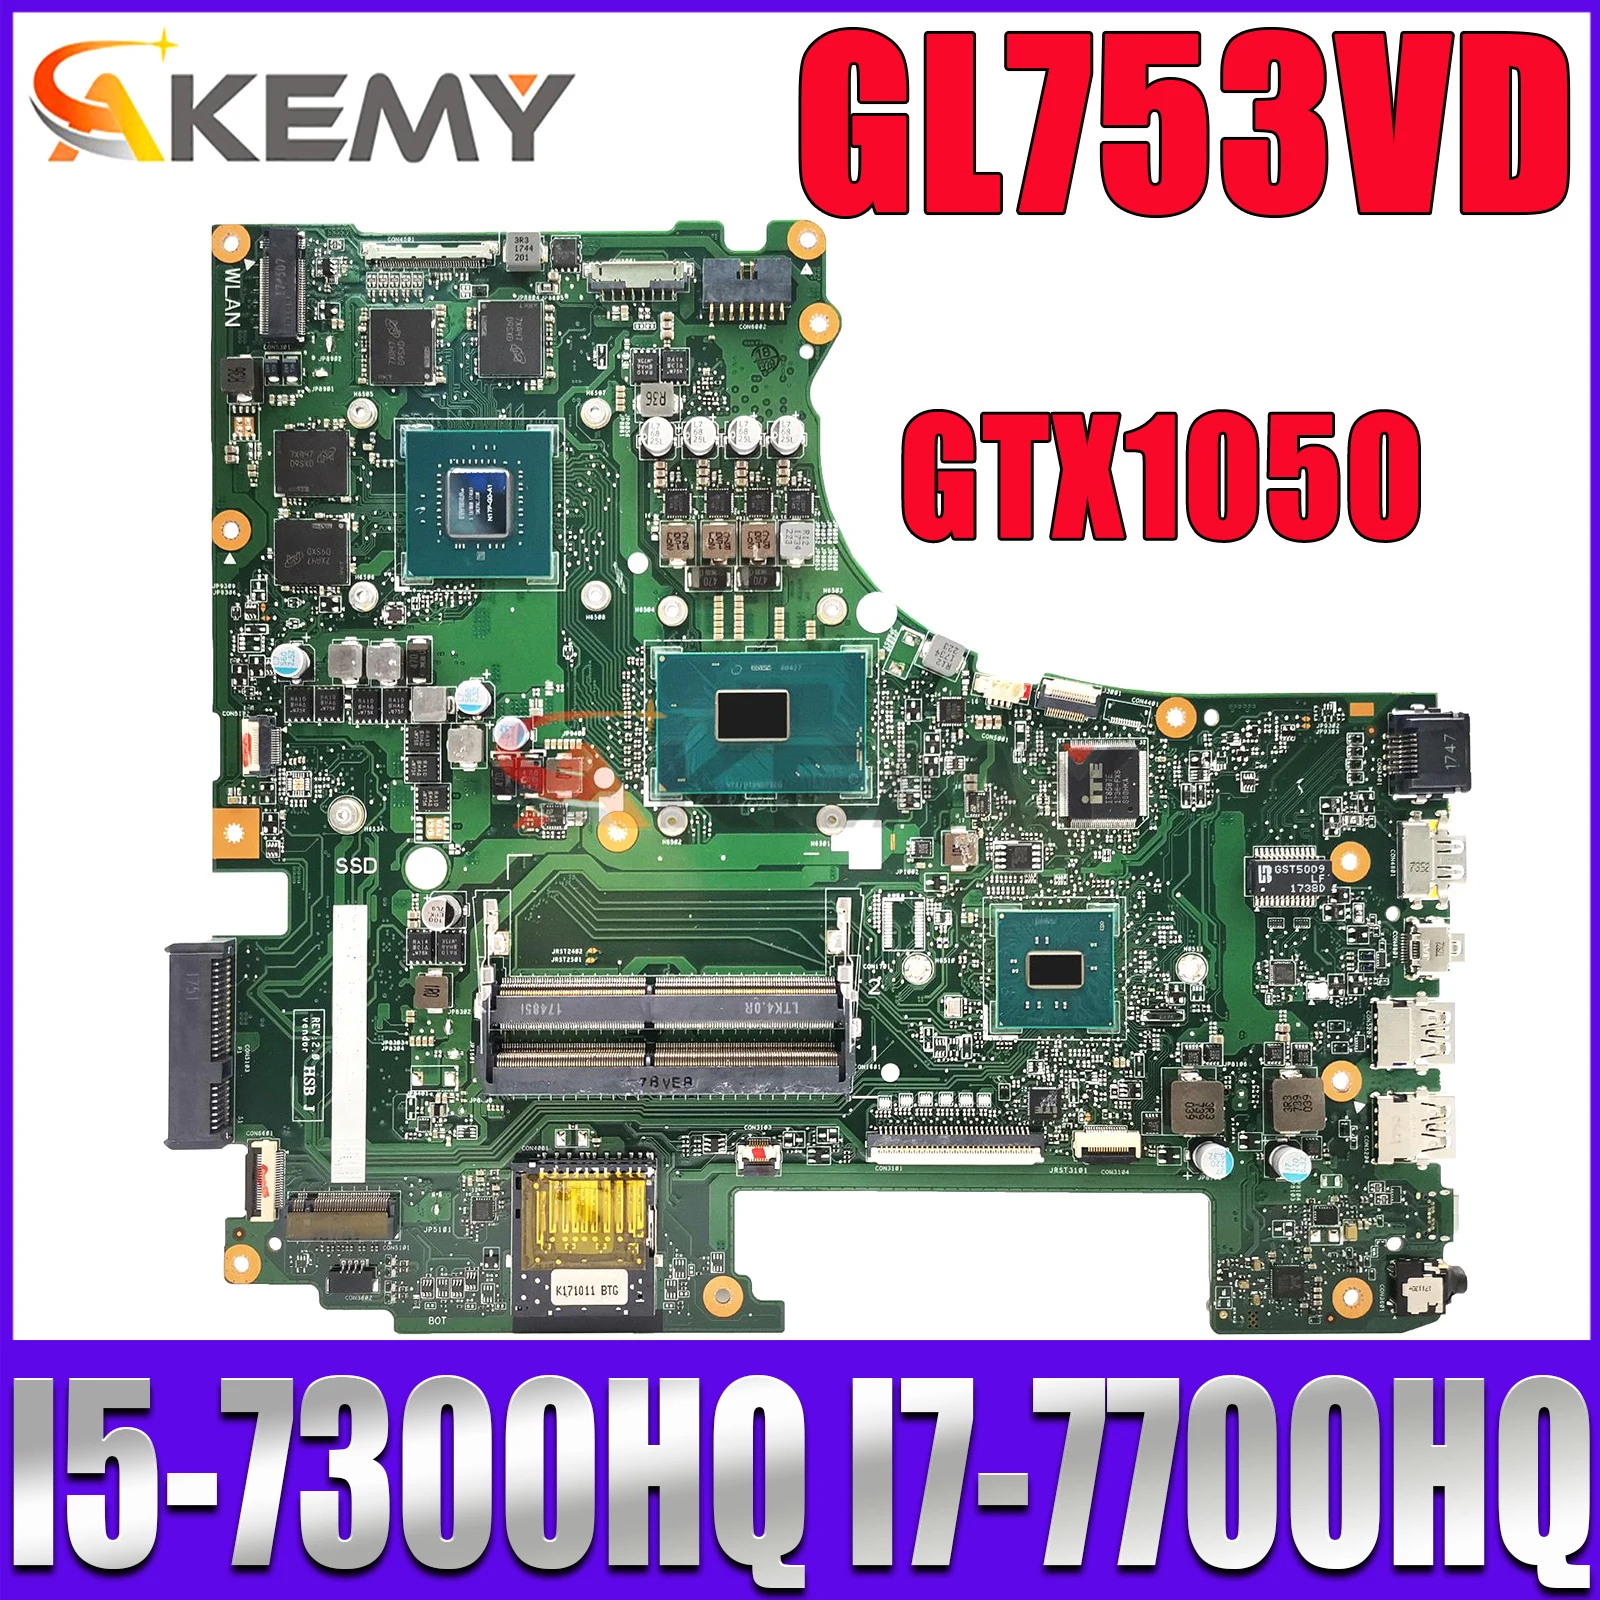 

Notebook Mainboard For ROG GL753VD GL753VE FX753V ZX753V GL753V GL753 Laptop Motherboard CPU i5 i7 7th Gen GPU GTX1050